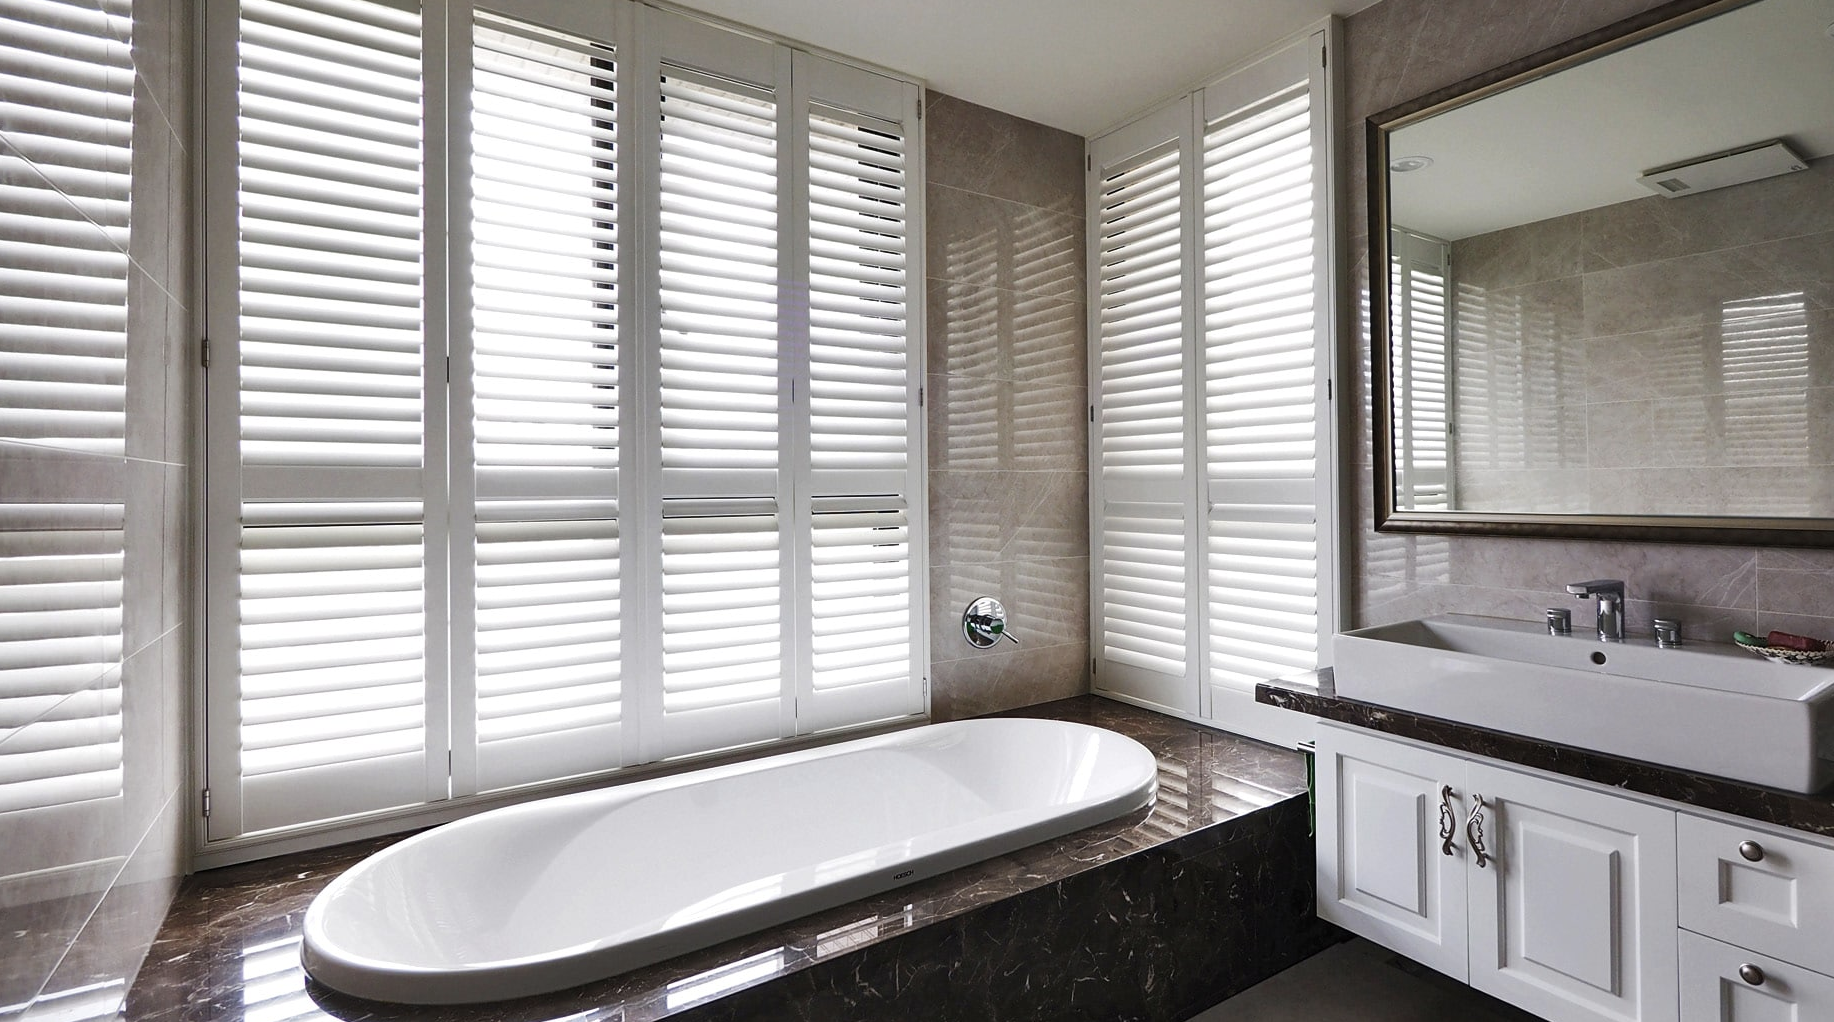 Norman Woodlore Plus Shutters, plantation shutters window treatment in bathroom